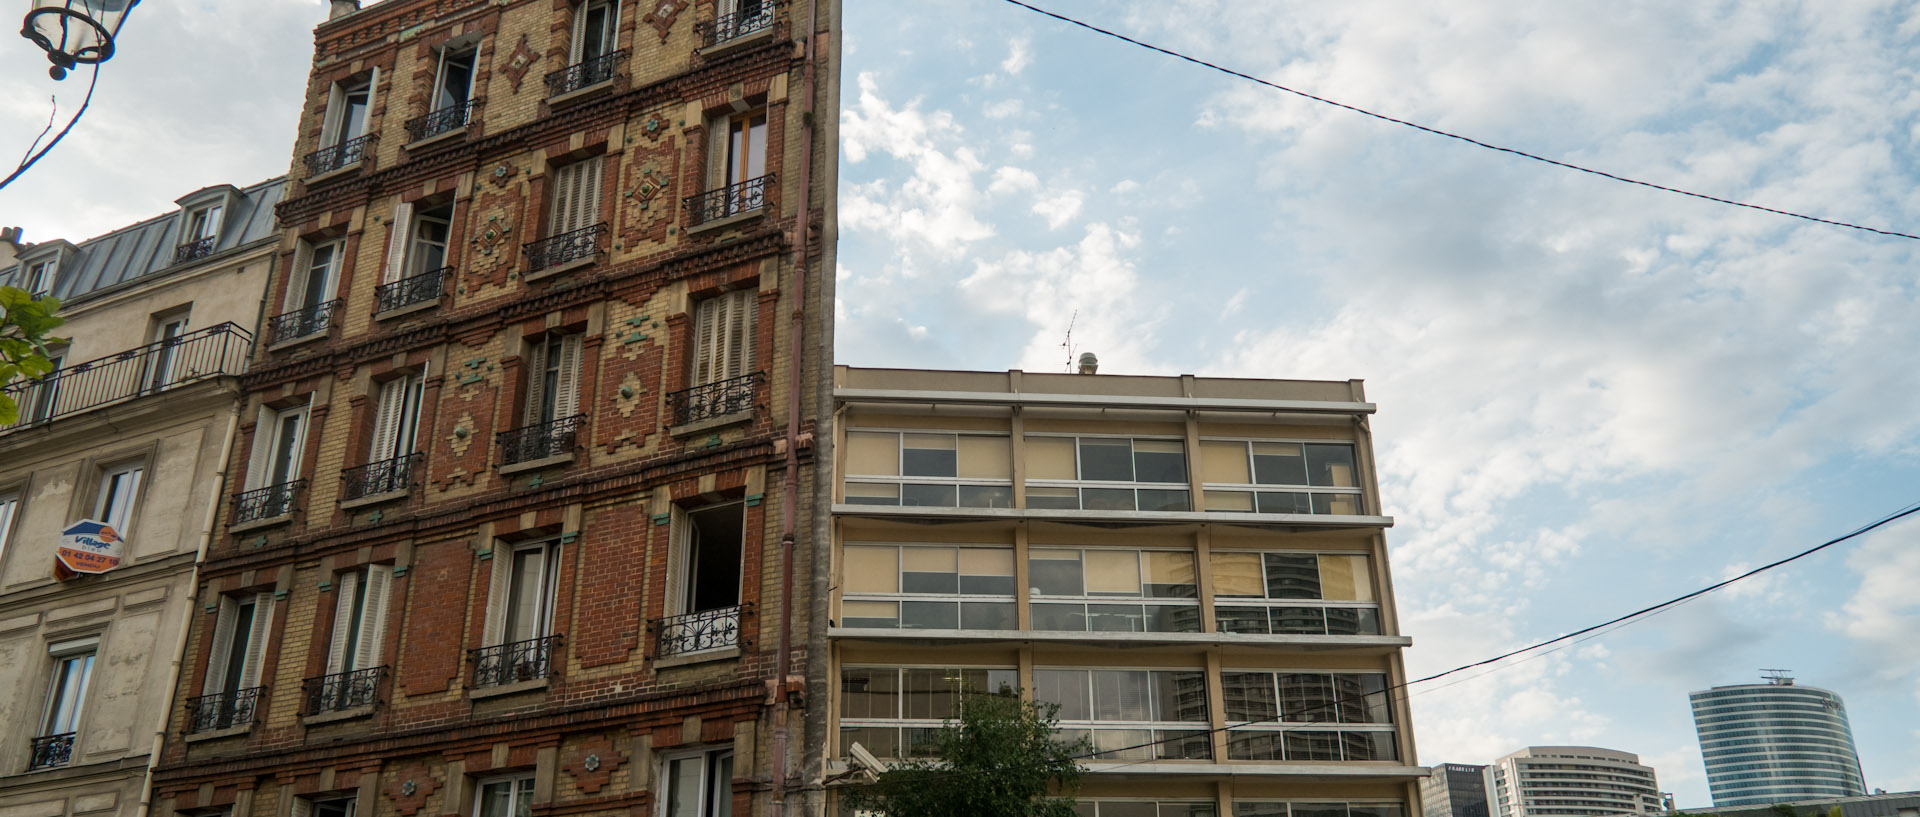 Vieux immeubles et immeubles modernes, rue Jean-Jaurès, à Puteaux.